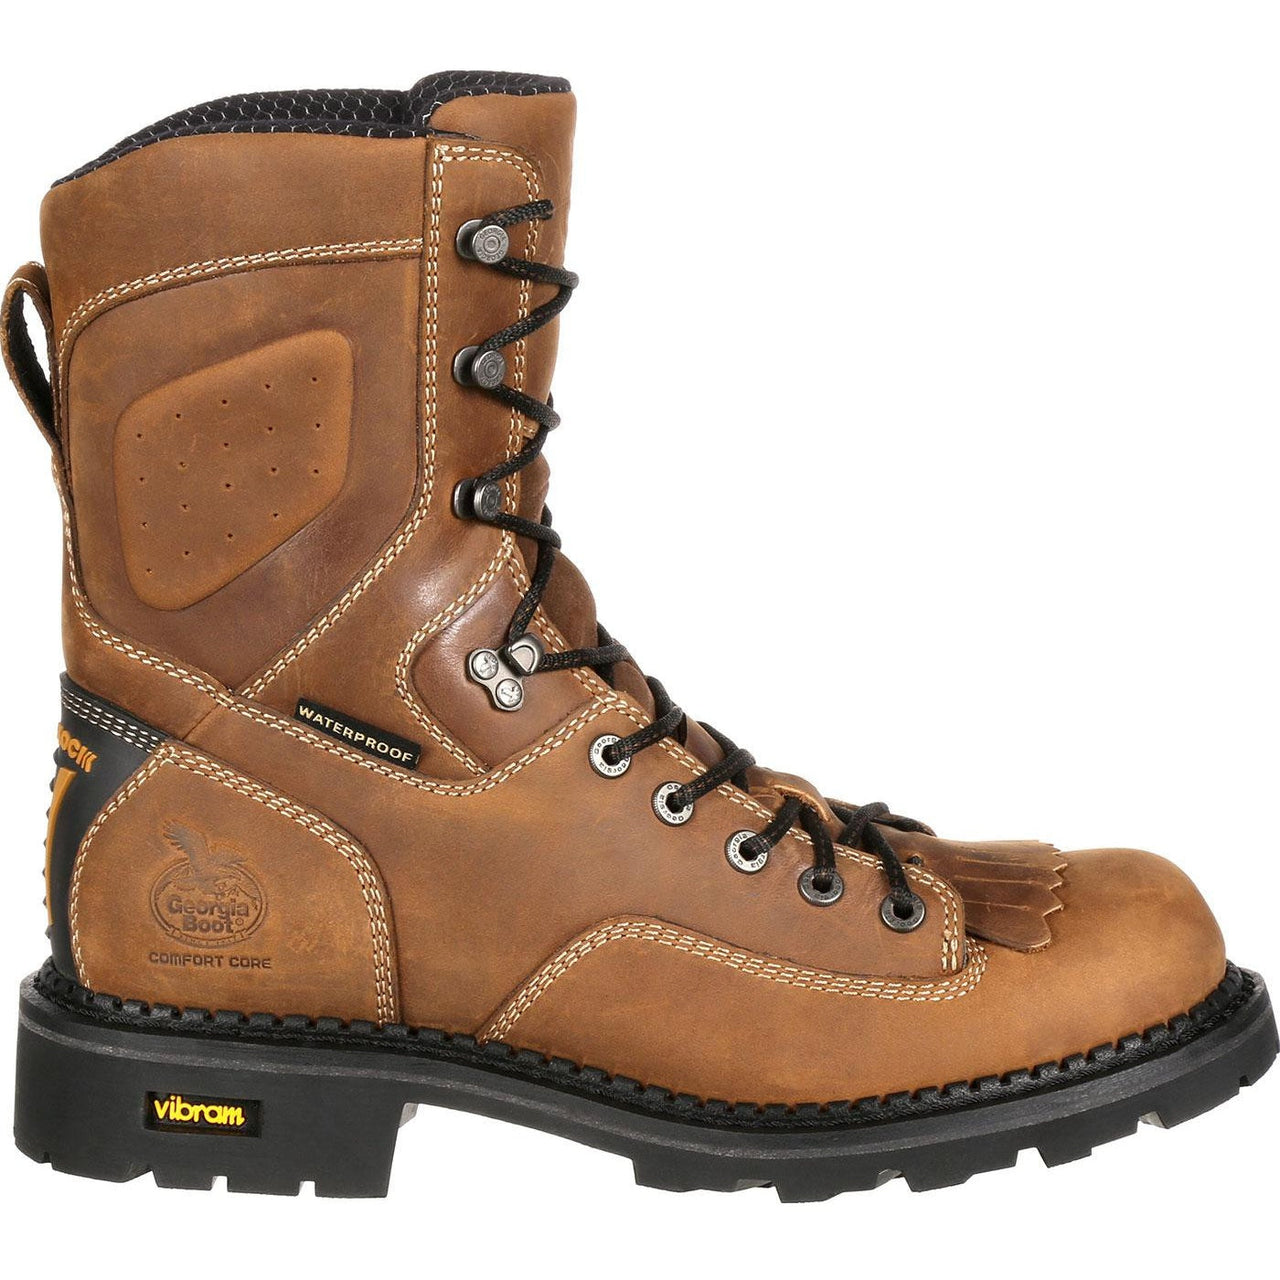 Men's Georgia Boots Comfort Core Waterproof Low Heel Logger Work Boots Brown - yeehawcowboy